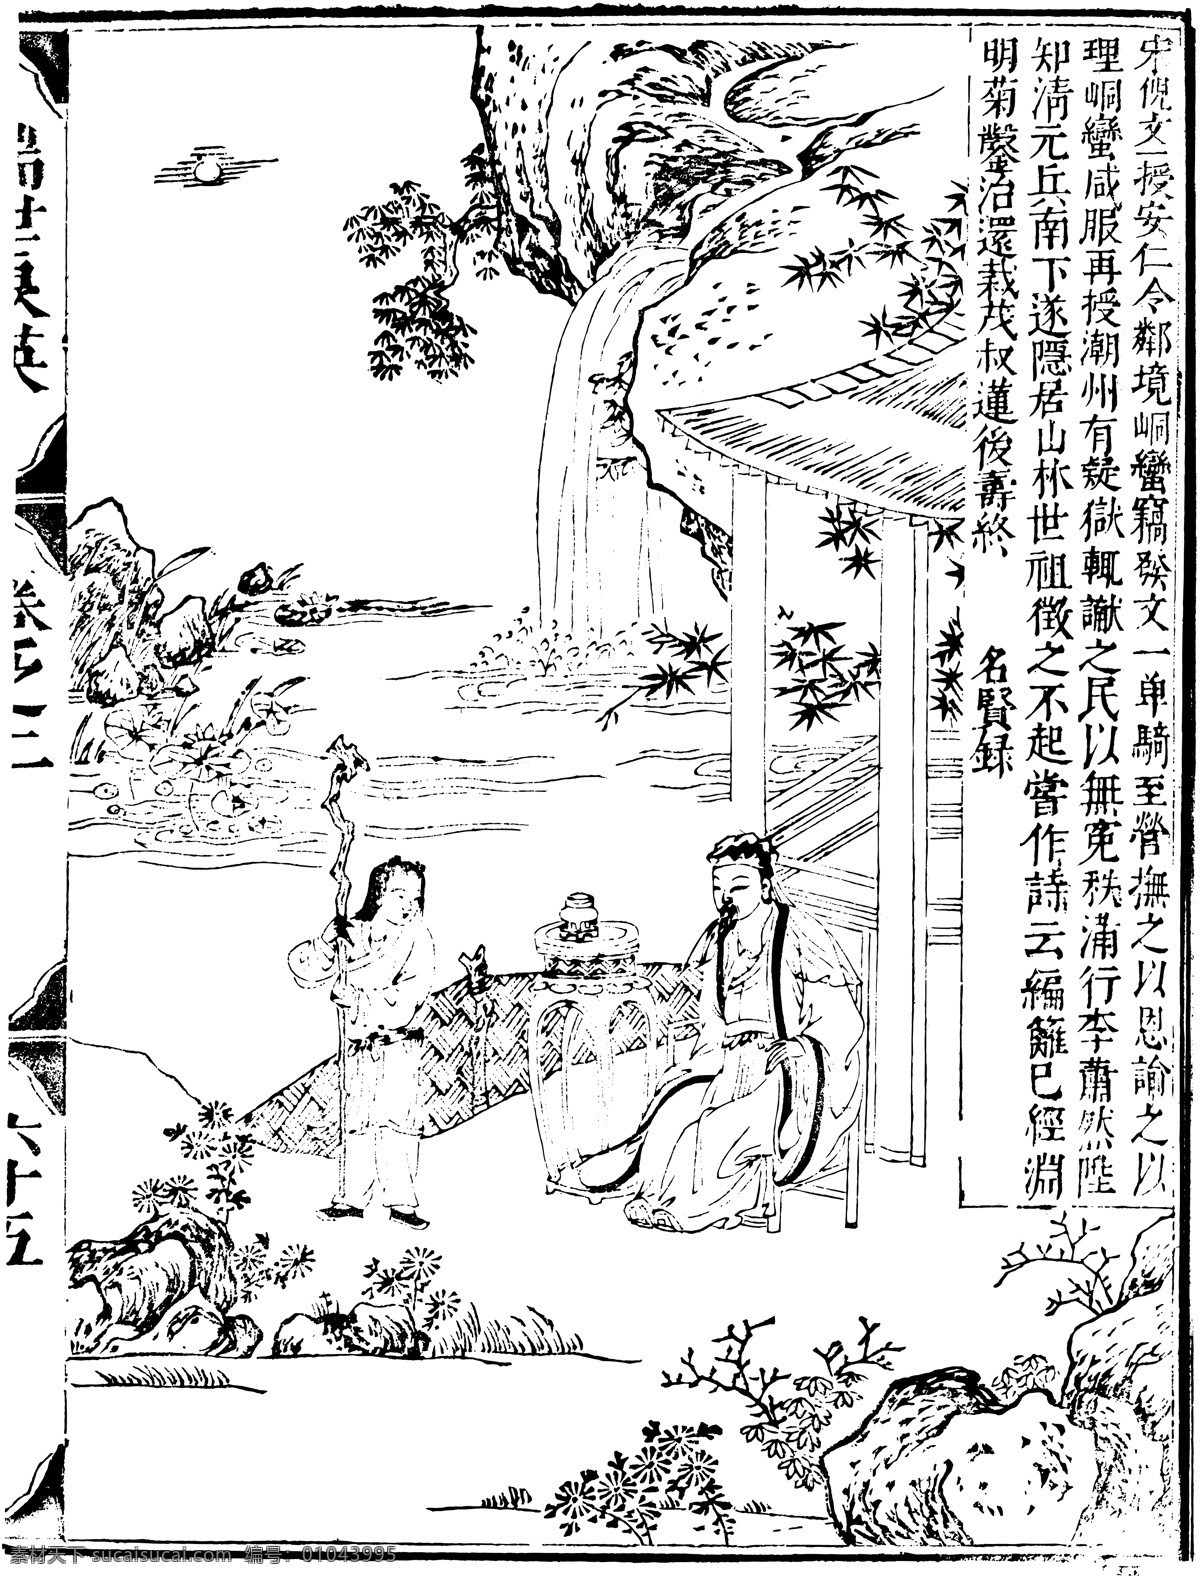 瑞世良英 木刻版画 中国 传统文化 39 中国传统文化 设计素材 版画世界 书画美术 白色